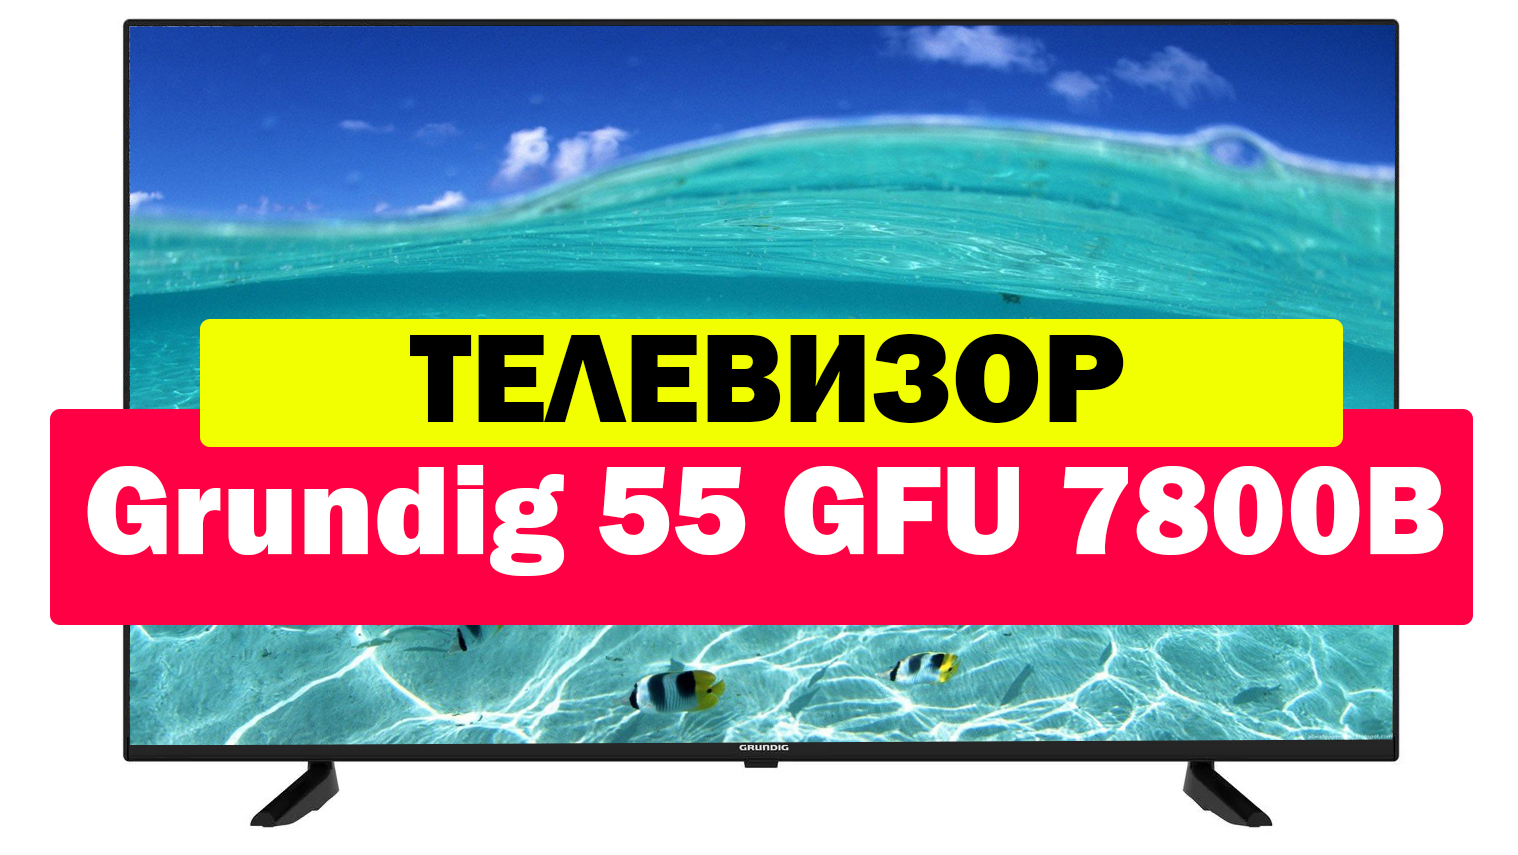 Телевизор grundig 55 gfu 7800b. Телевизор Grundig 55. Телевизор Grundig 55 GFU 7800. Телевизор Grundig 55 GFU 7800b отзывы. Телевизор Grundig 55 GFU 7800b обзор.